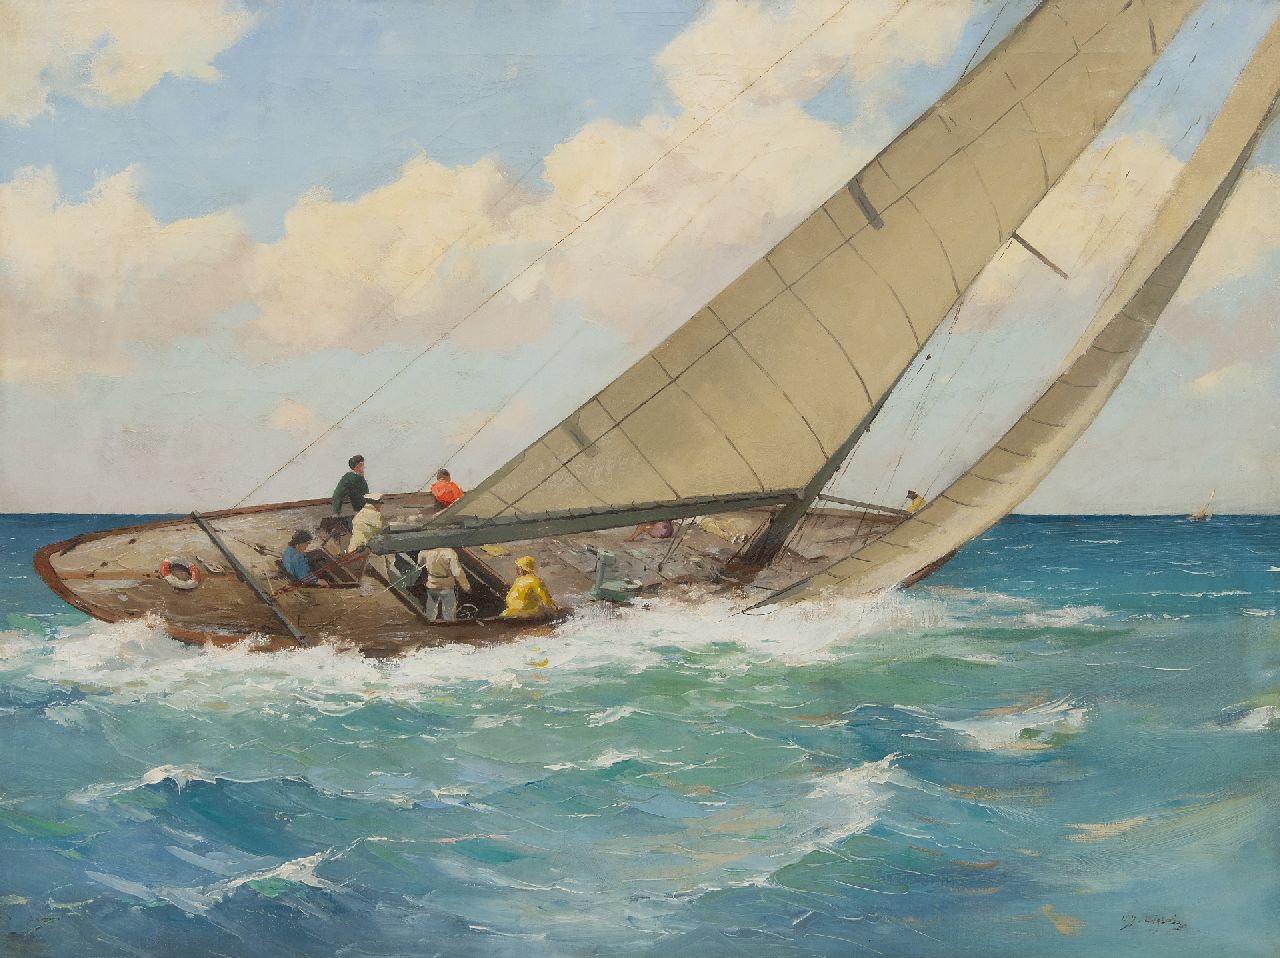 Ligtelijn E.J.  | Evert Jan Ligtelijn | Schilderijen te koop aangeboden | Zeilschip in actie, olieverf op doek 60,2 x 79,6 cm, gesigneerd rechtsonder